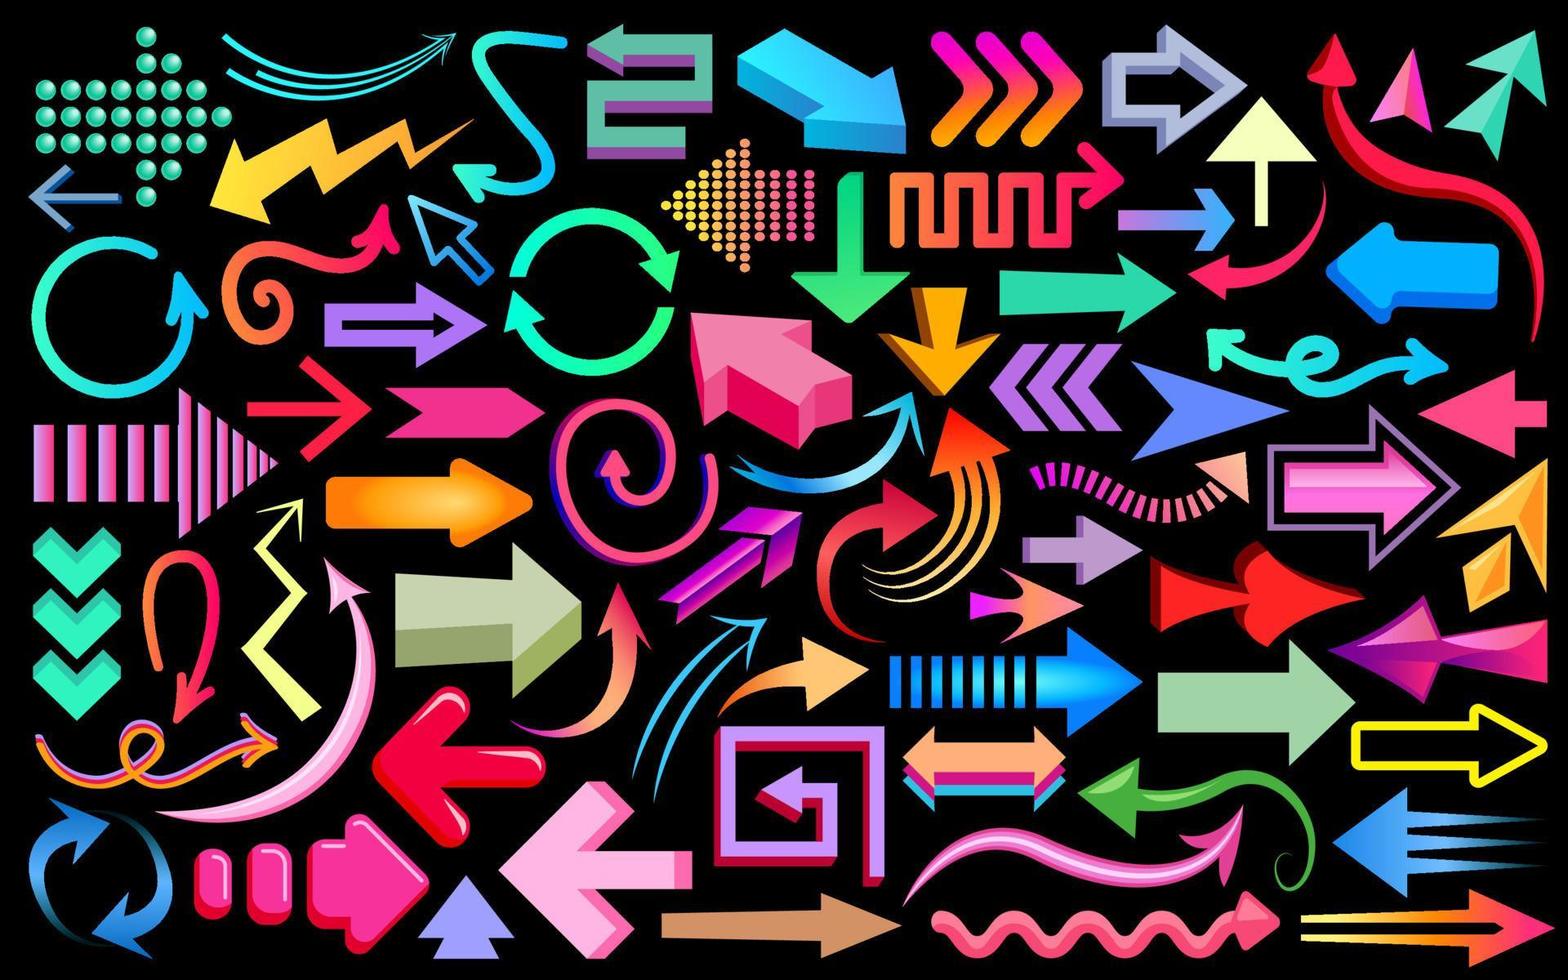 conjunto grande de iconos de flecha, colección de iconos de flecha coloridos abstractos. flechas fijadas rectas, curvas, isométricas, en zigzag, representación 3d, símbolos espirales aislados en fondo negro. flechas vectoriales de colores. vector